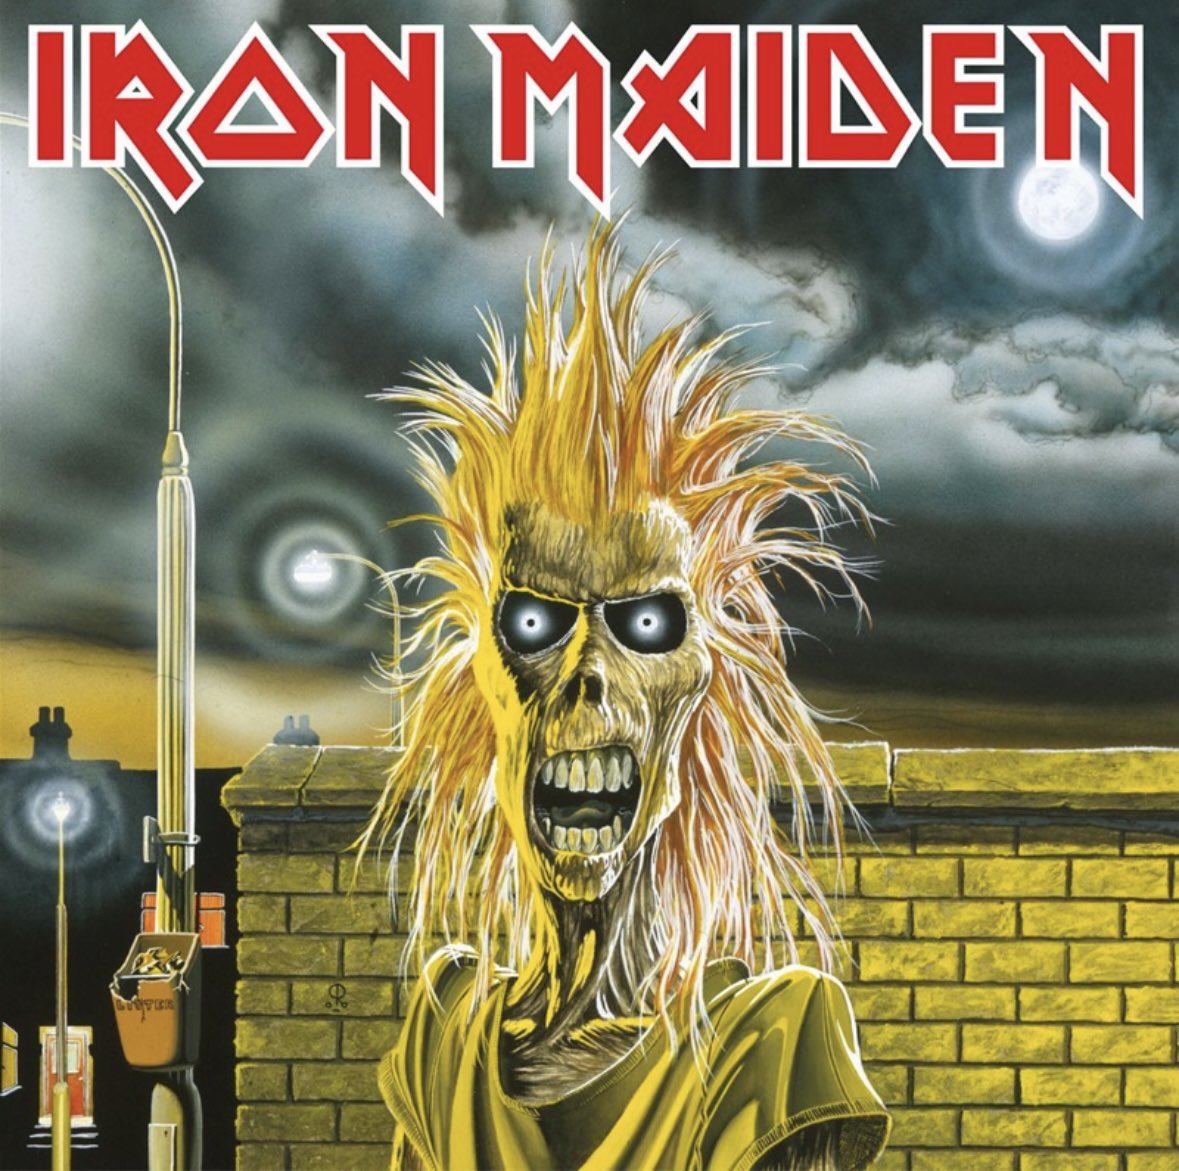 Iron Maiden／Iron Maiden

９月も、もう直ぐって感じになってきた😆

 #802RO